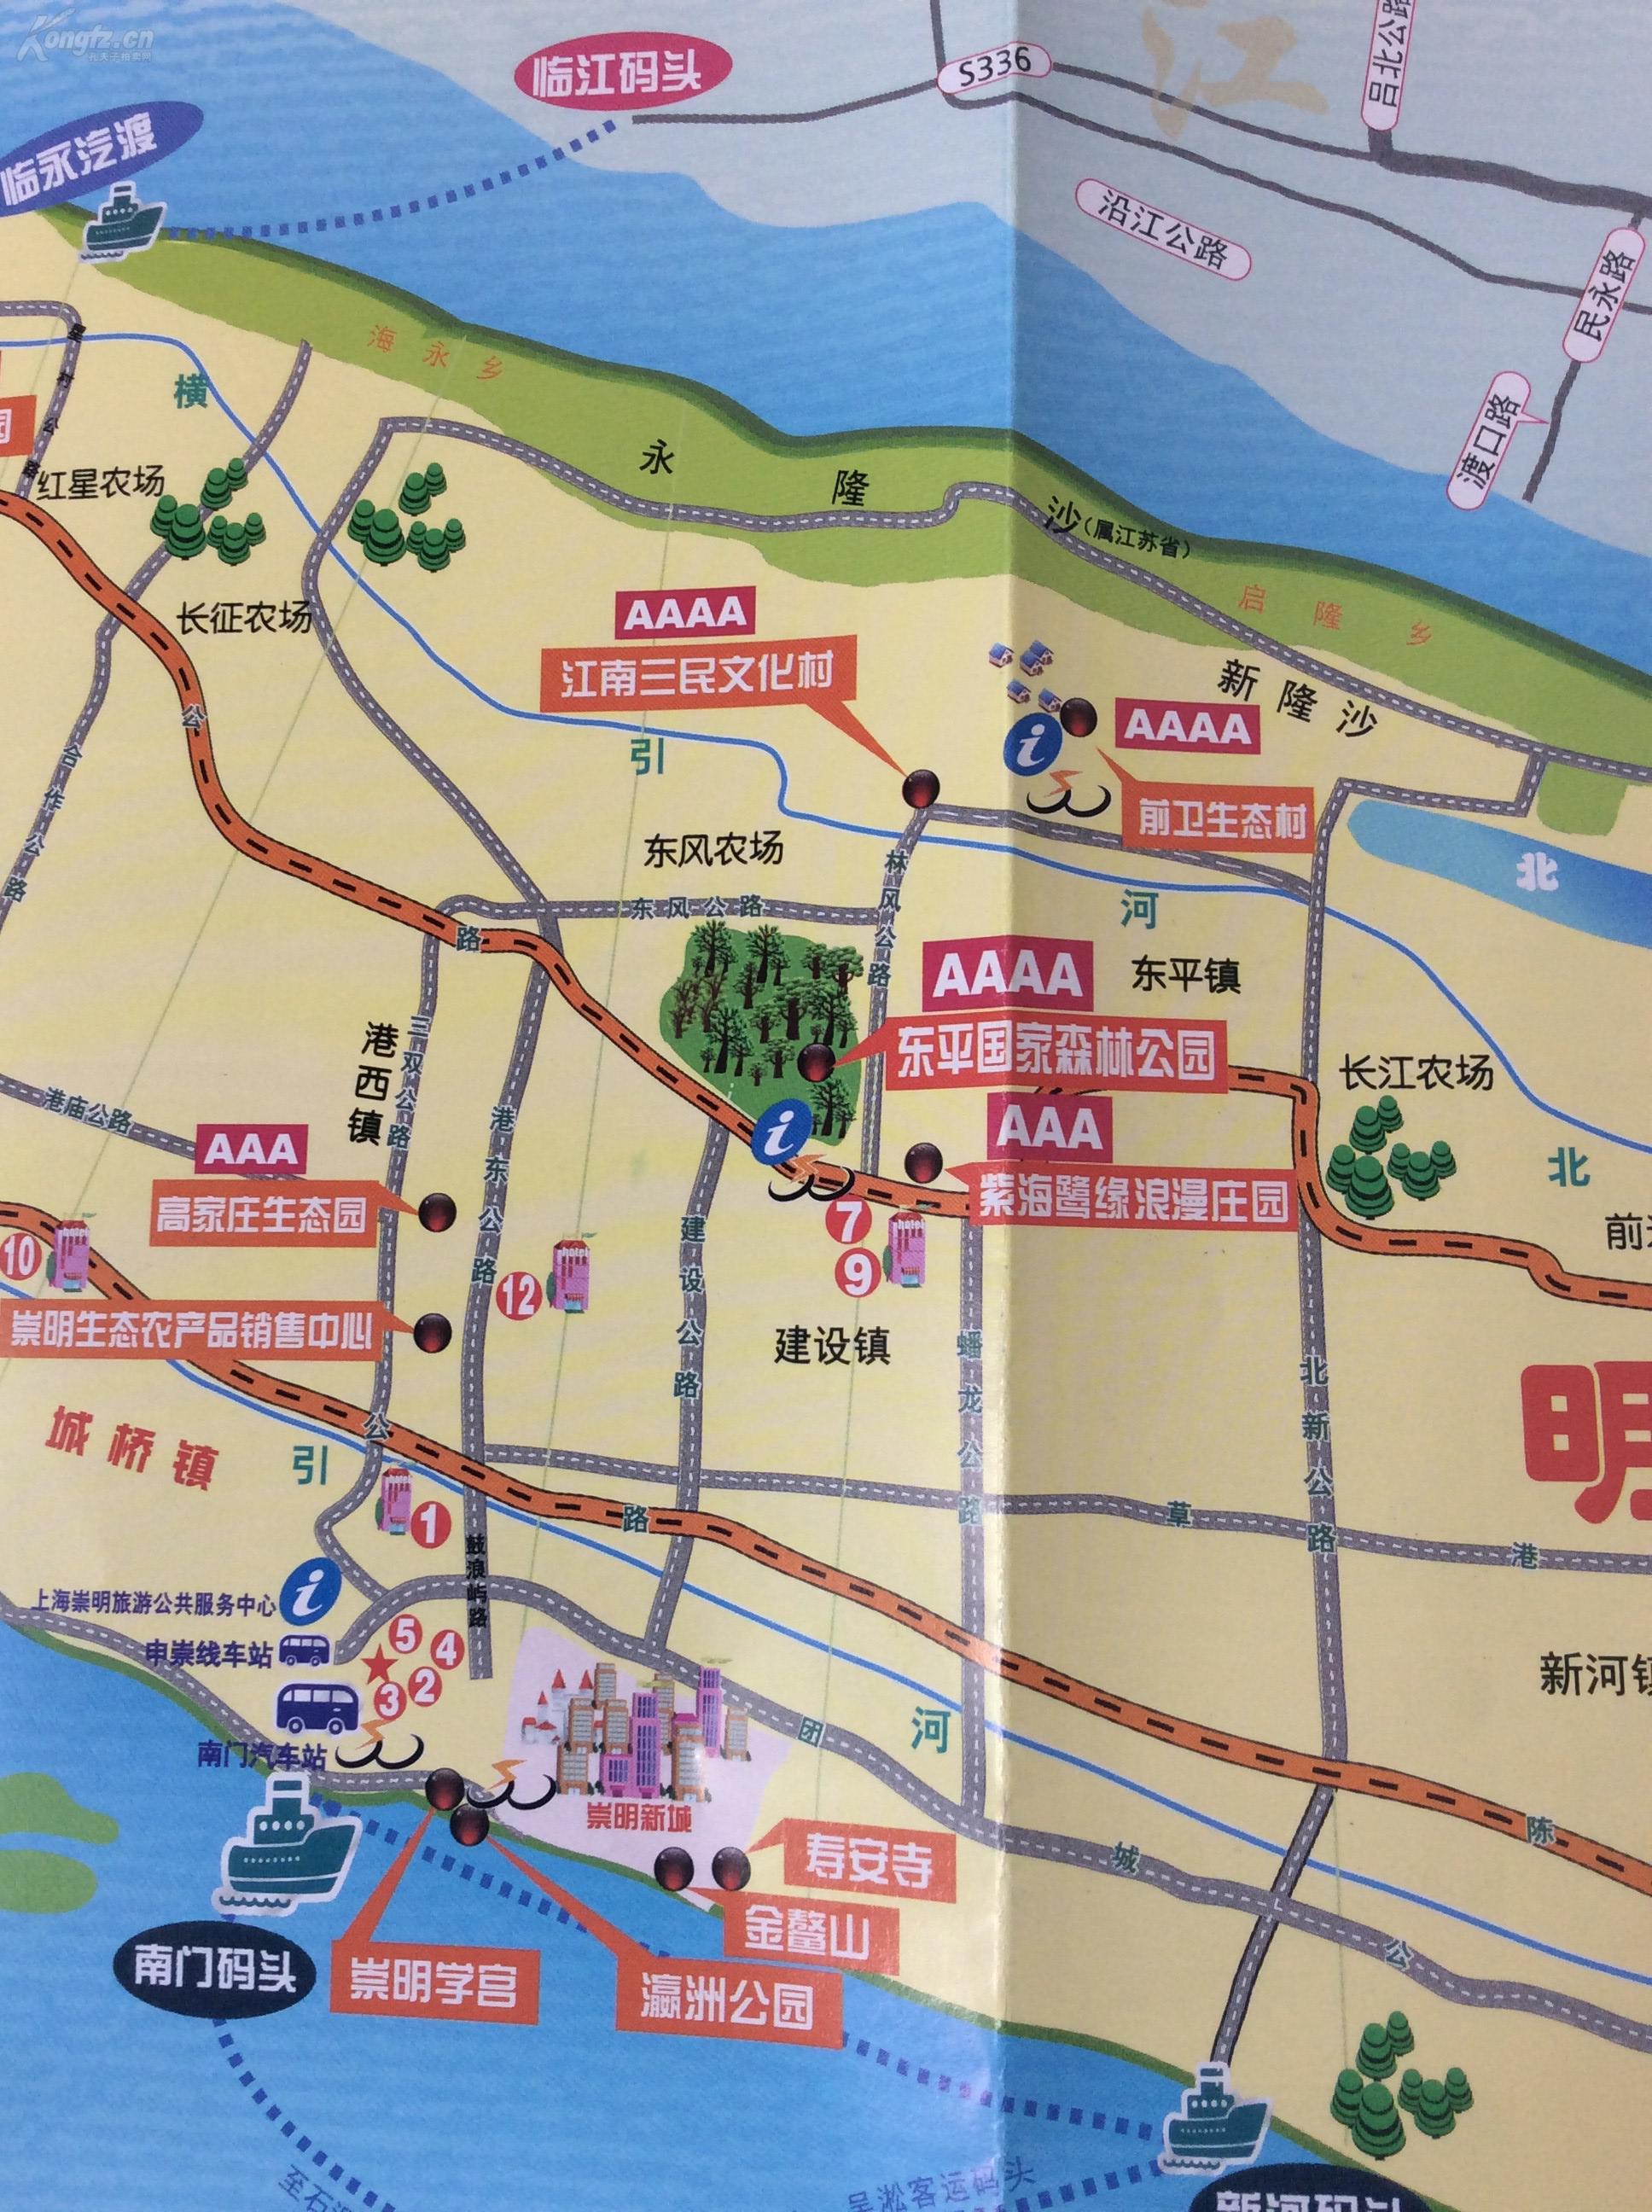 上海崇明岛旅游导览图(2016全彩铜版)图片